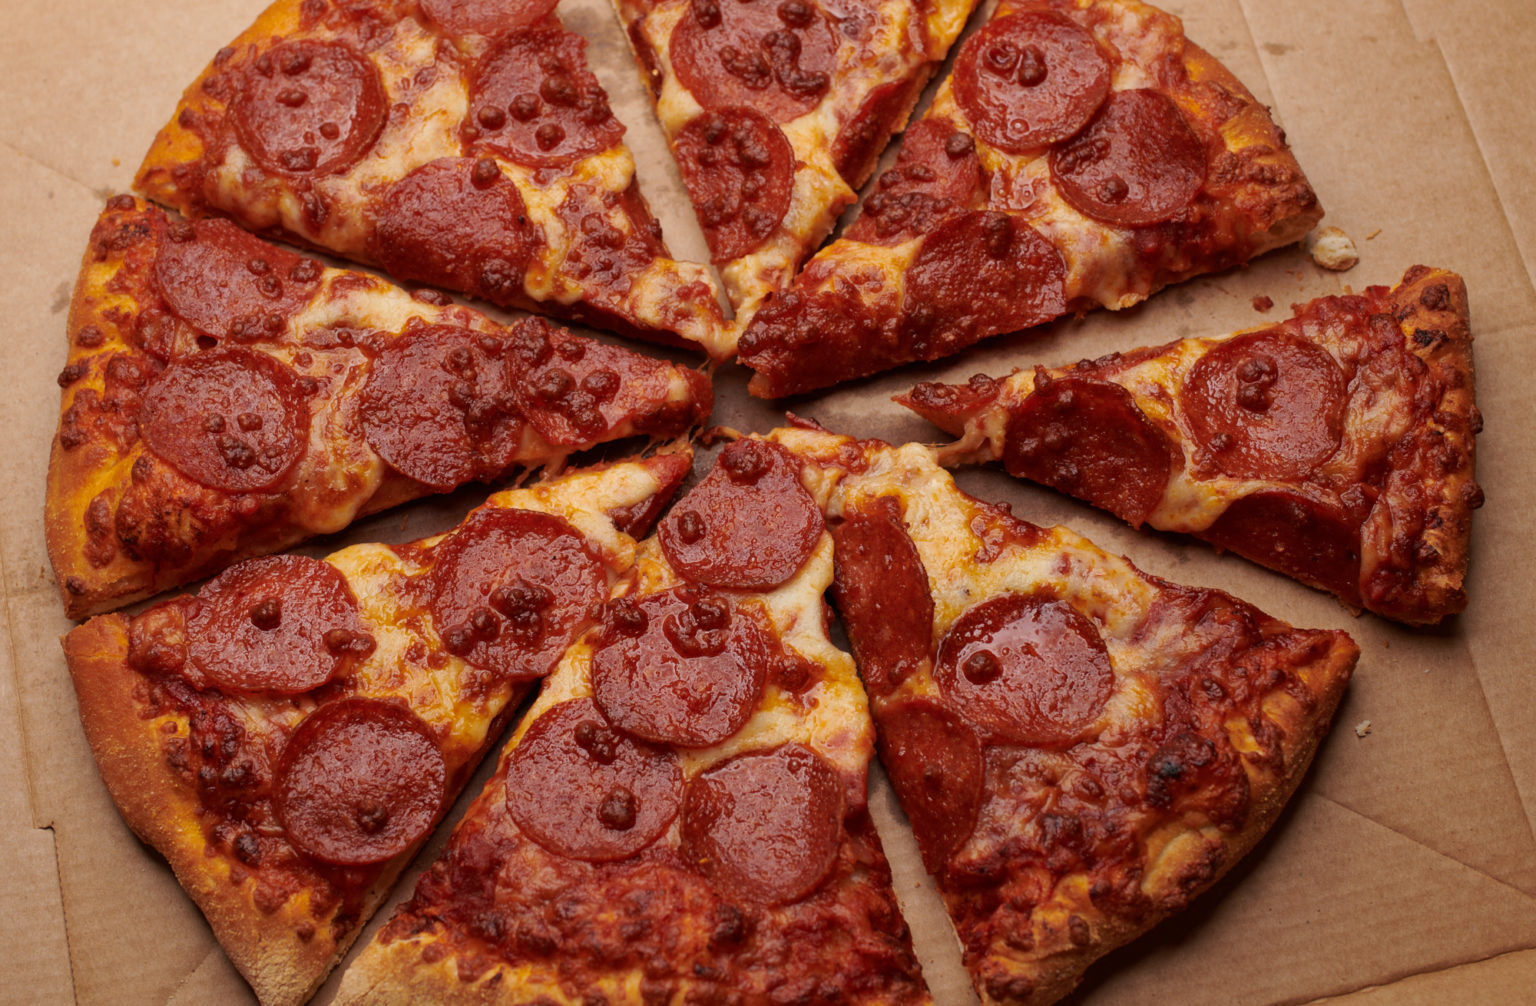 U ponudi je 18 pizza u tri veličine: 25, 29 i 34 centimetra. Cijene se kreću od 34 do 75 kuna. U ponudi imaju i krilca, pileće trakice, kruščiće i deserte.